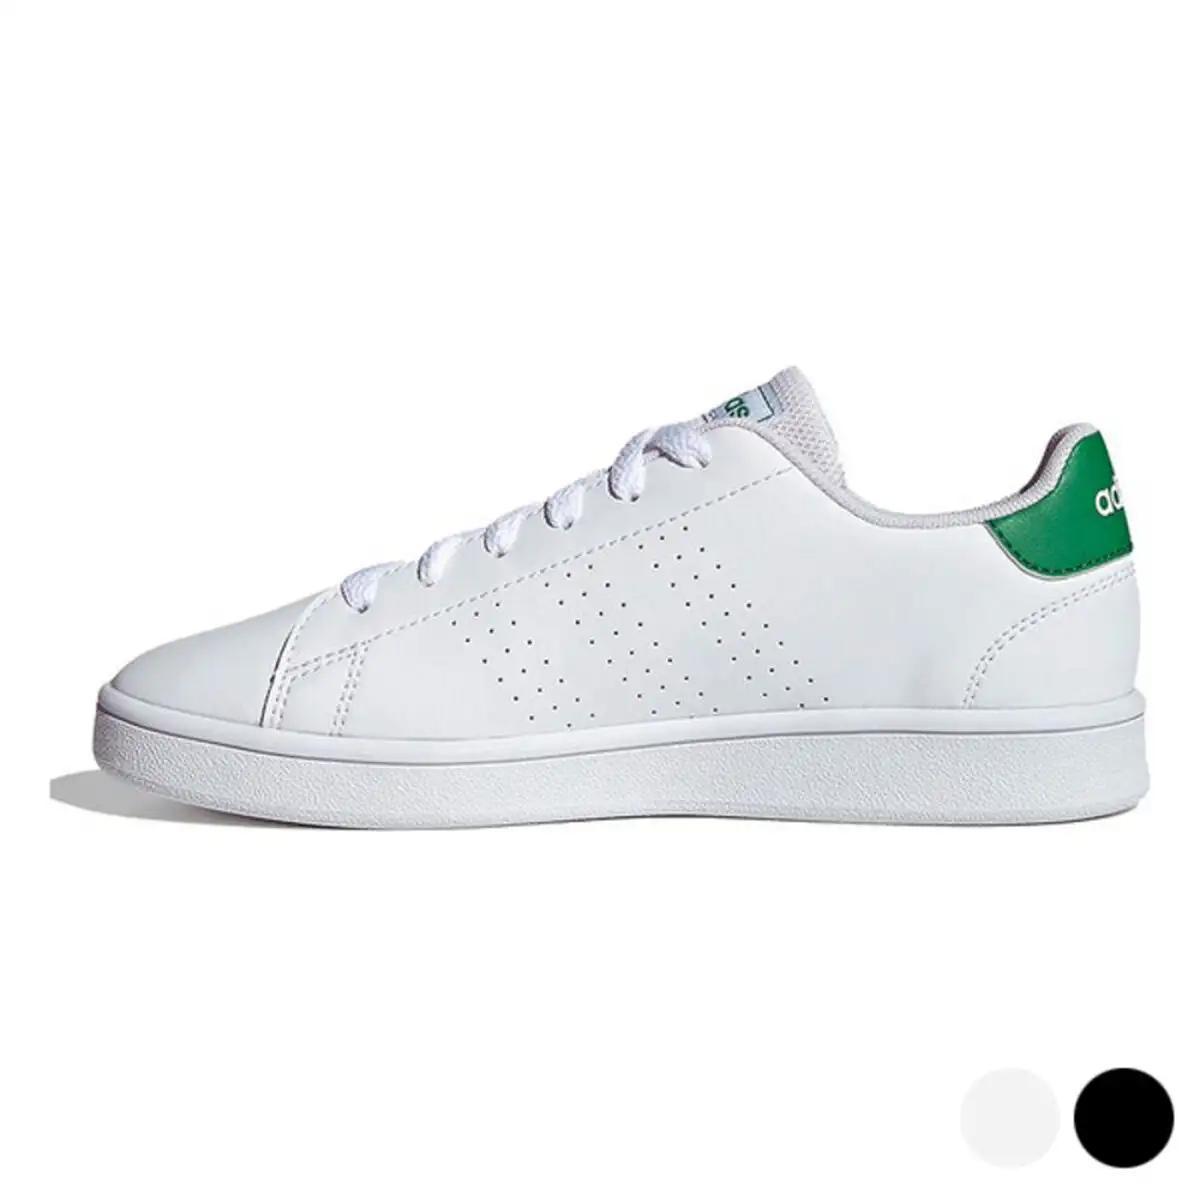 Chaussures de sport pour enfants adidas advantage k_2508. DIAYTAR SENEGAL - Où Choisir Devient une Découverte. Explorez notre boutique en ligne et trouvez des articles qui vous surprennent et vous ravissent à chaque clic.